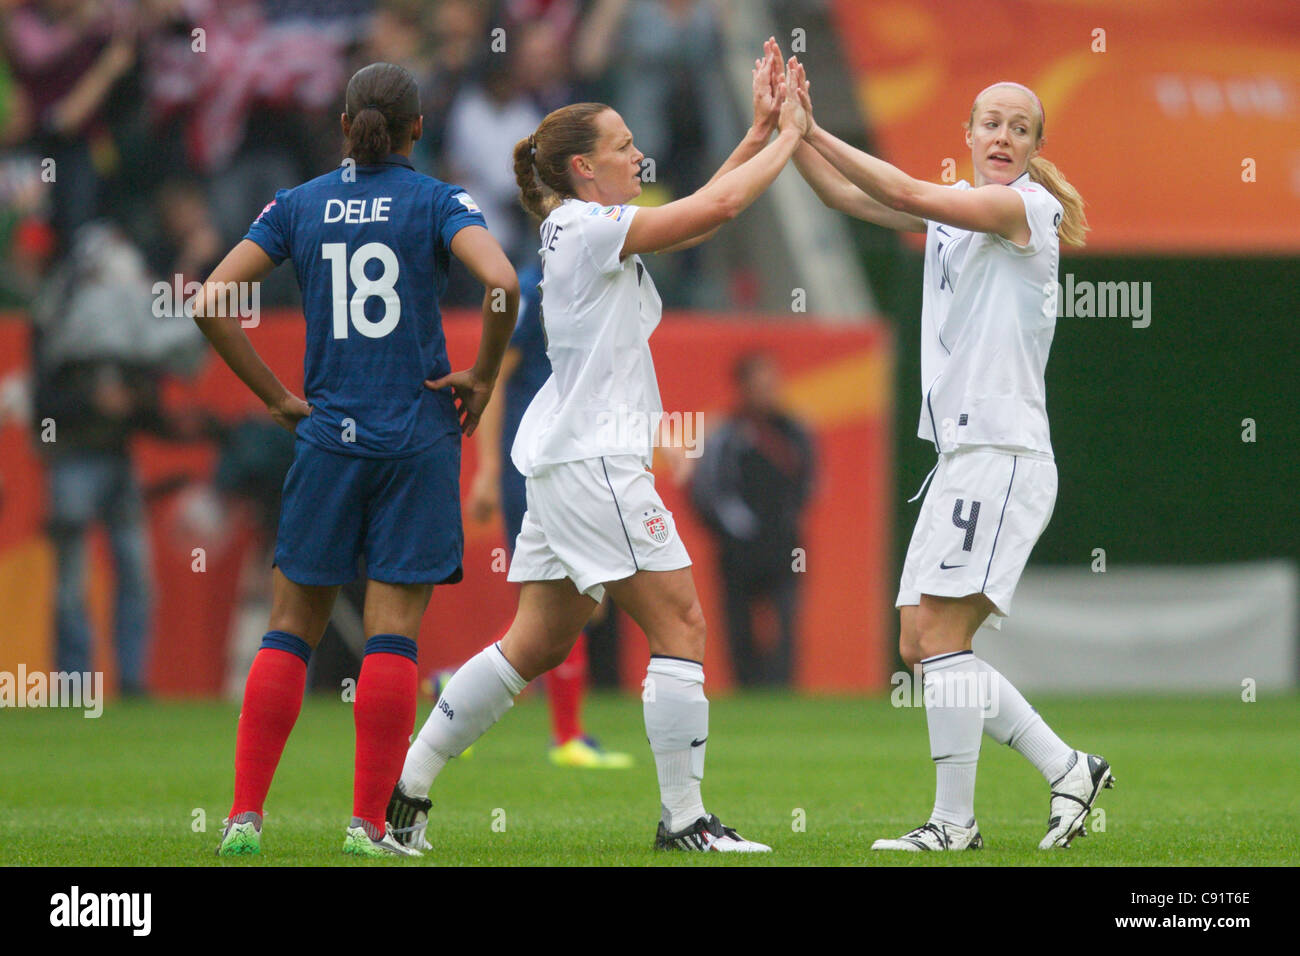 Le capitaine de l'équipe USA Christie Rampone (L) et son coéquipier Becky Sauerbrunn célébrer après un but contre la France dans un match de Coupe du monde. Banque D'Images